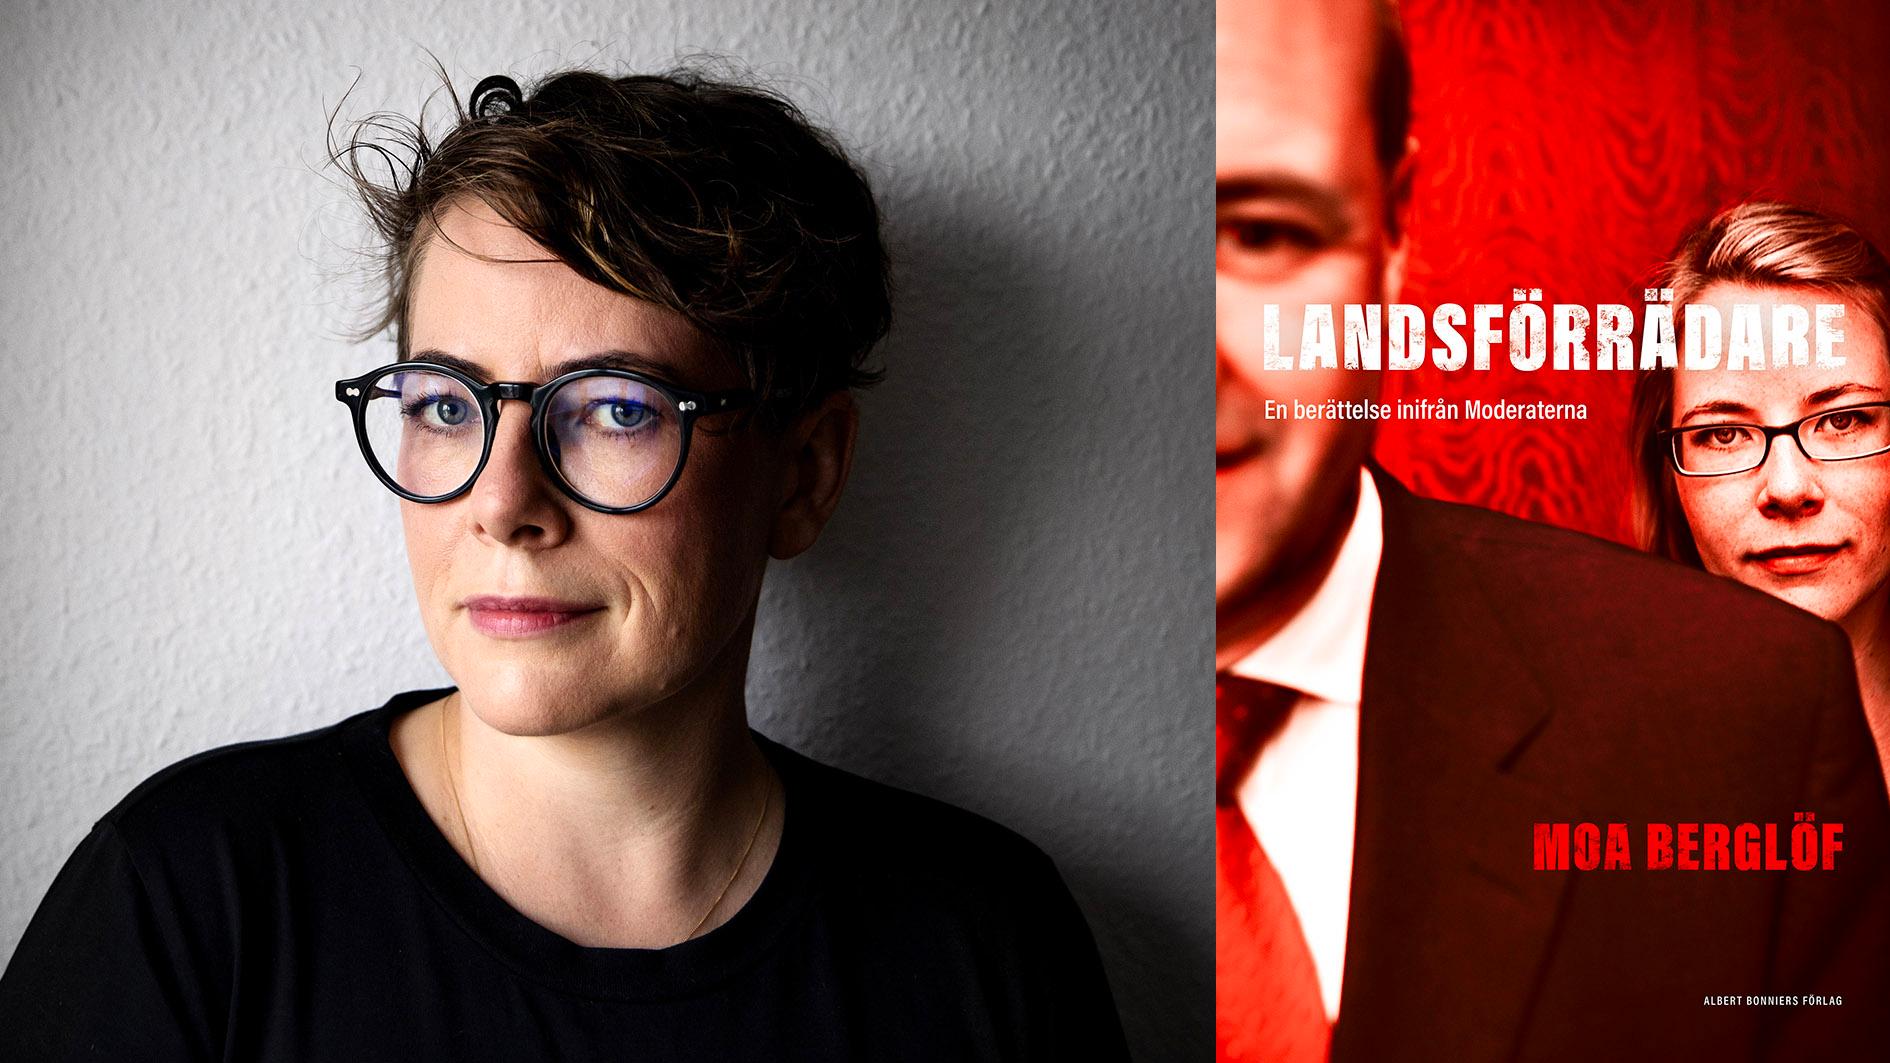 Moa Berglöf var talskrivare åt Fredrik Reinfeldt och i den politiska biografin ”Landsförrädare – en berättelse inifrån Moderaterna” berättar hon sin historia.